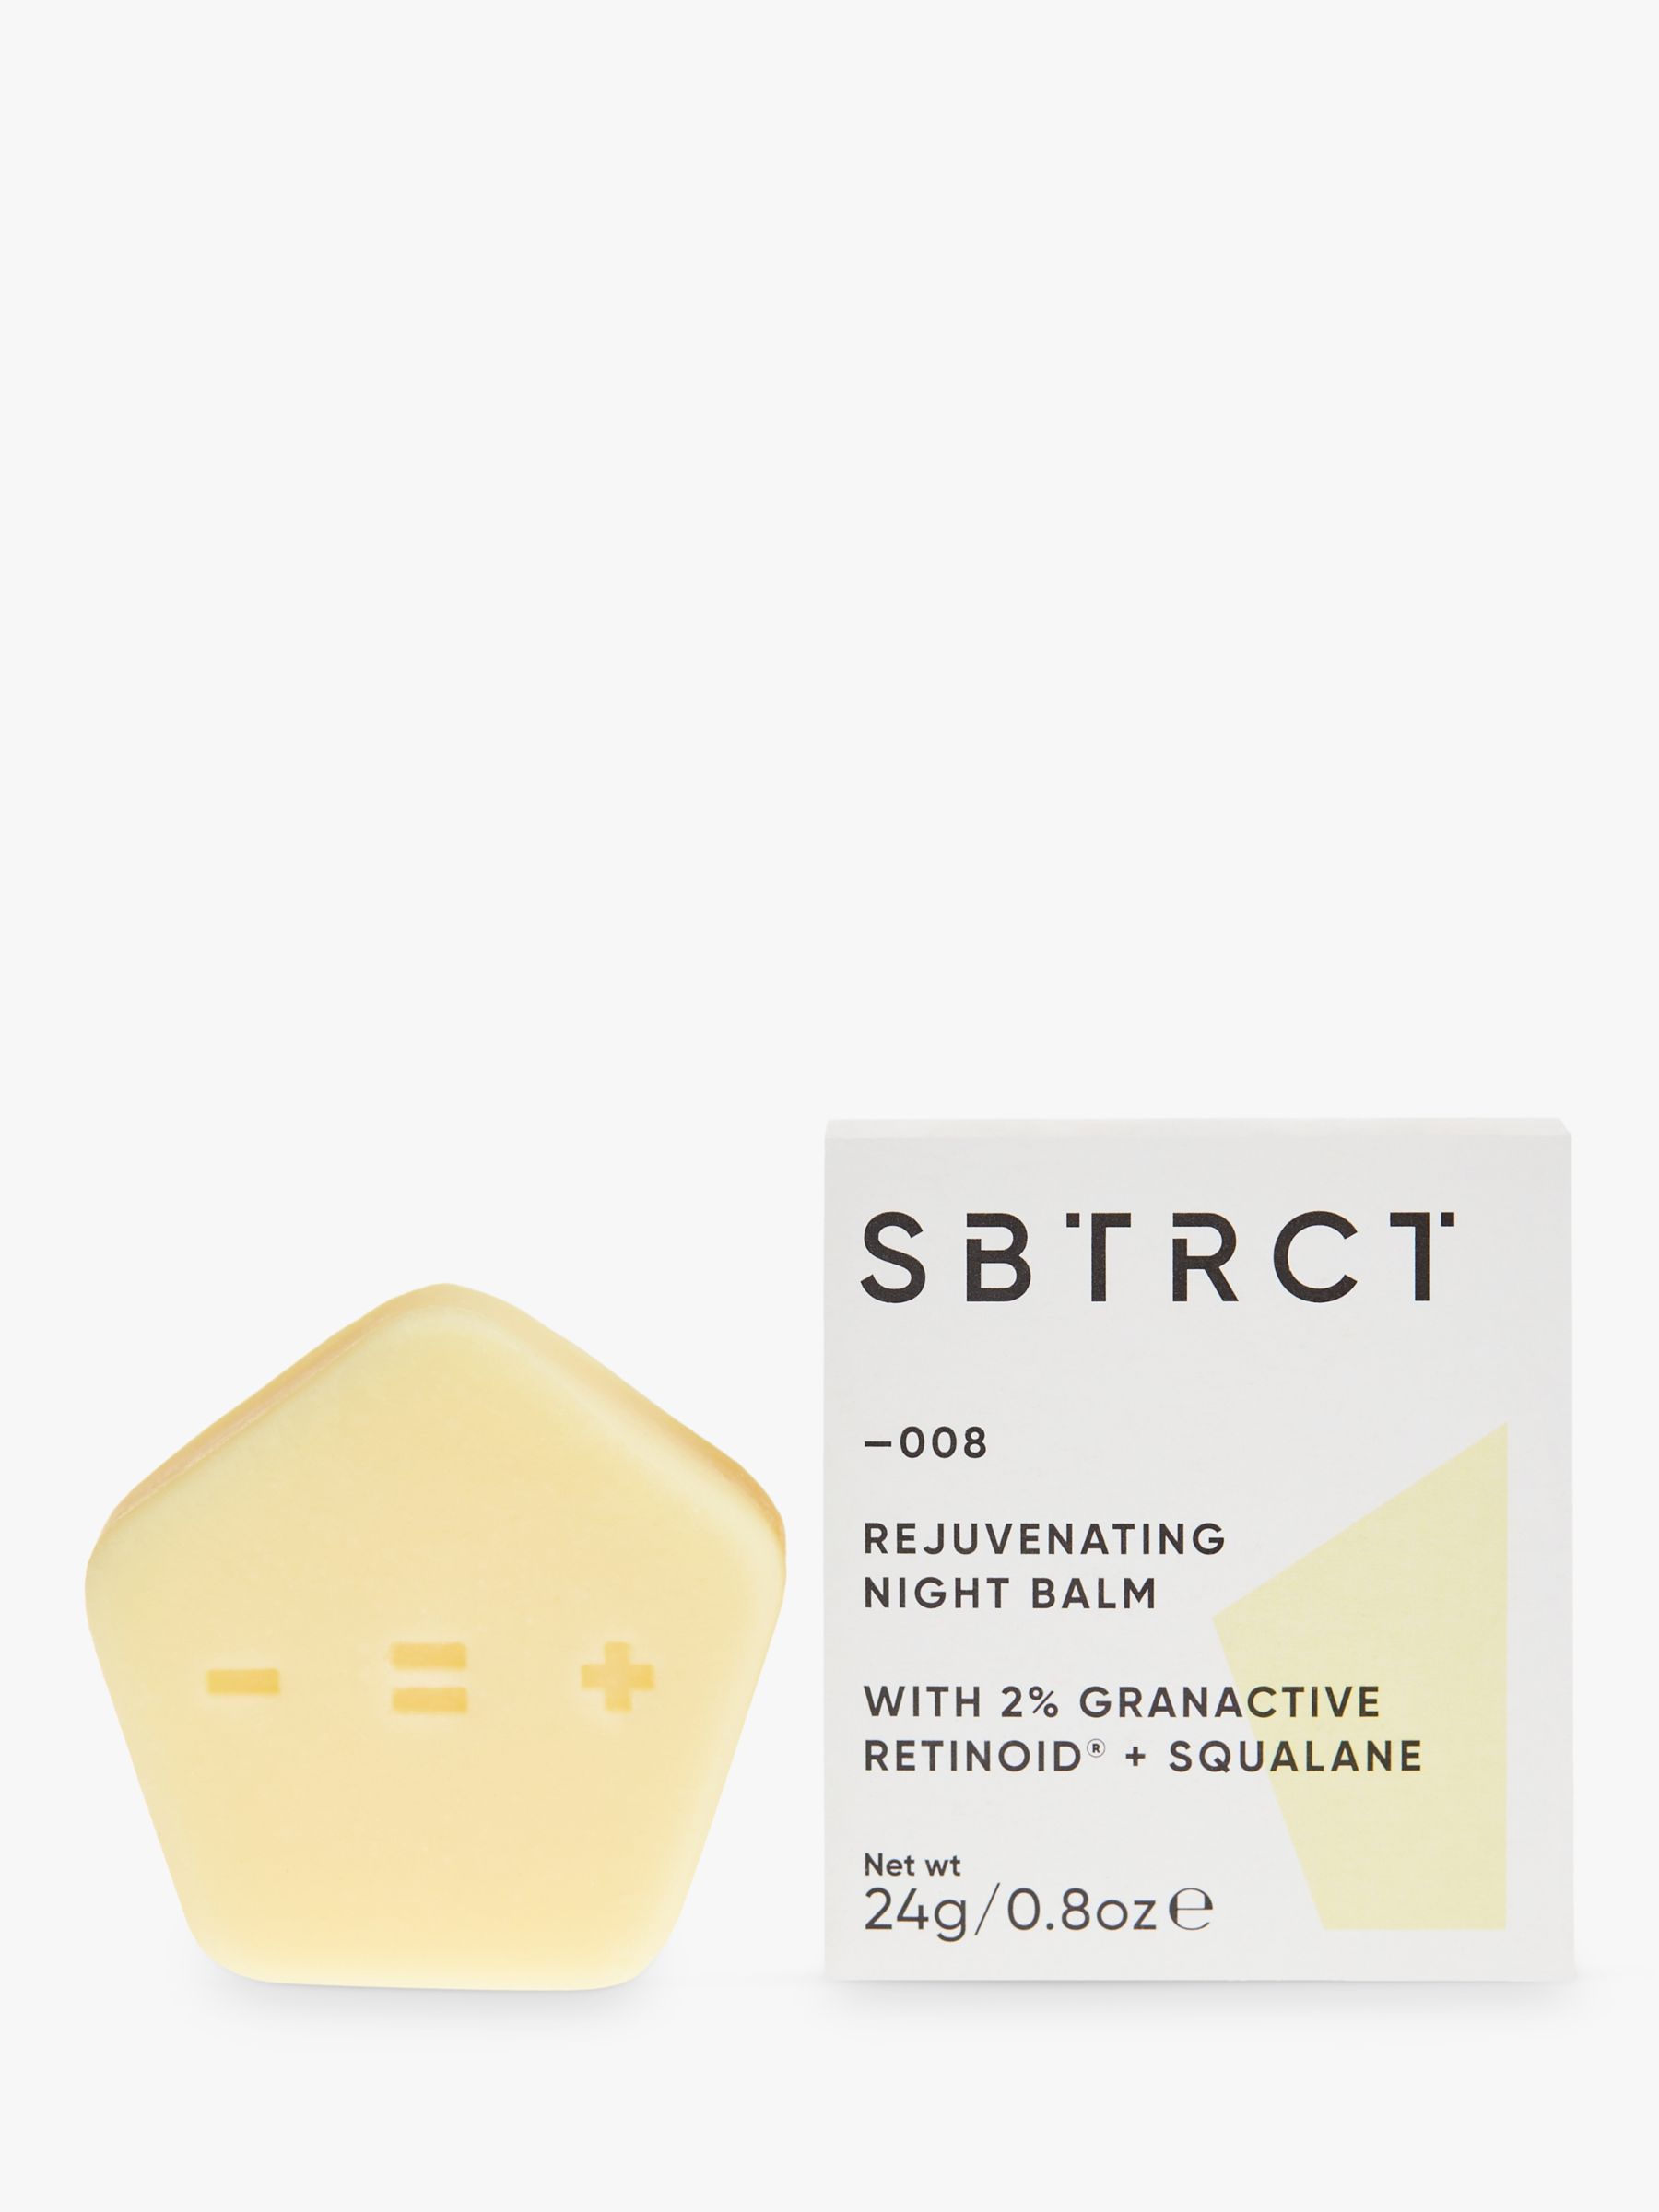 SBTRCT Rejuvenating Night Balm (2% Granactive Retinoid+Sqalane) Refill Bar, 24g 1